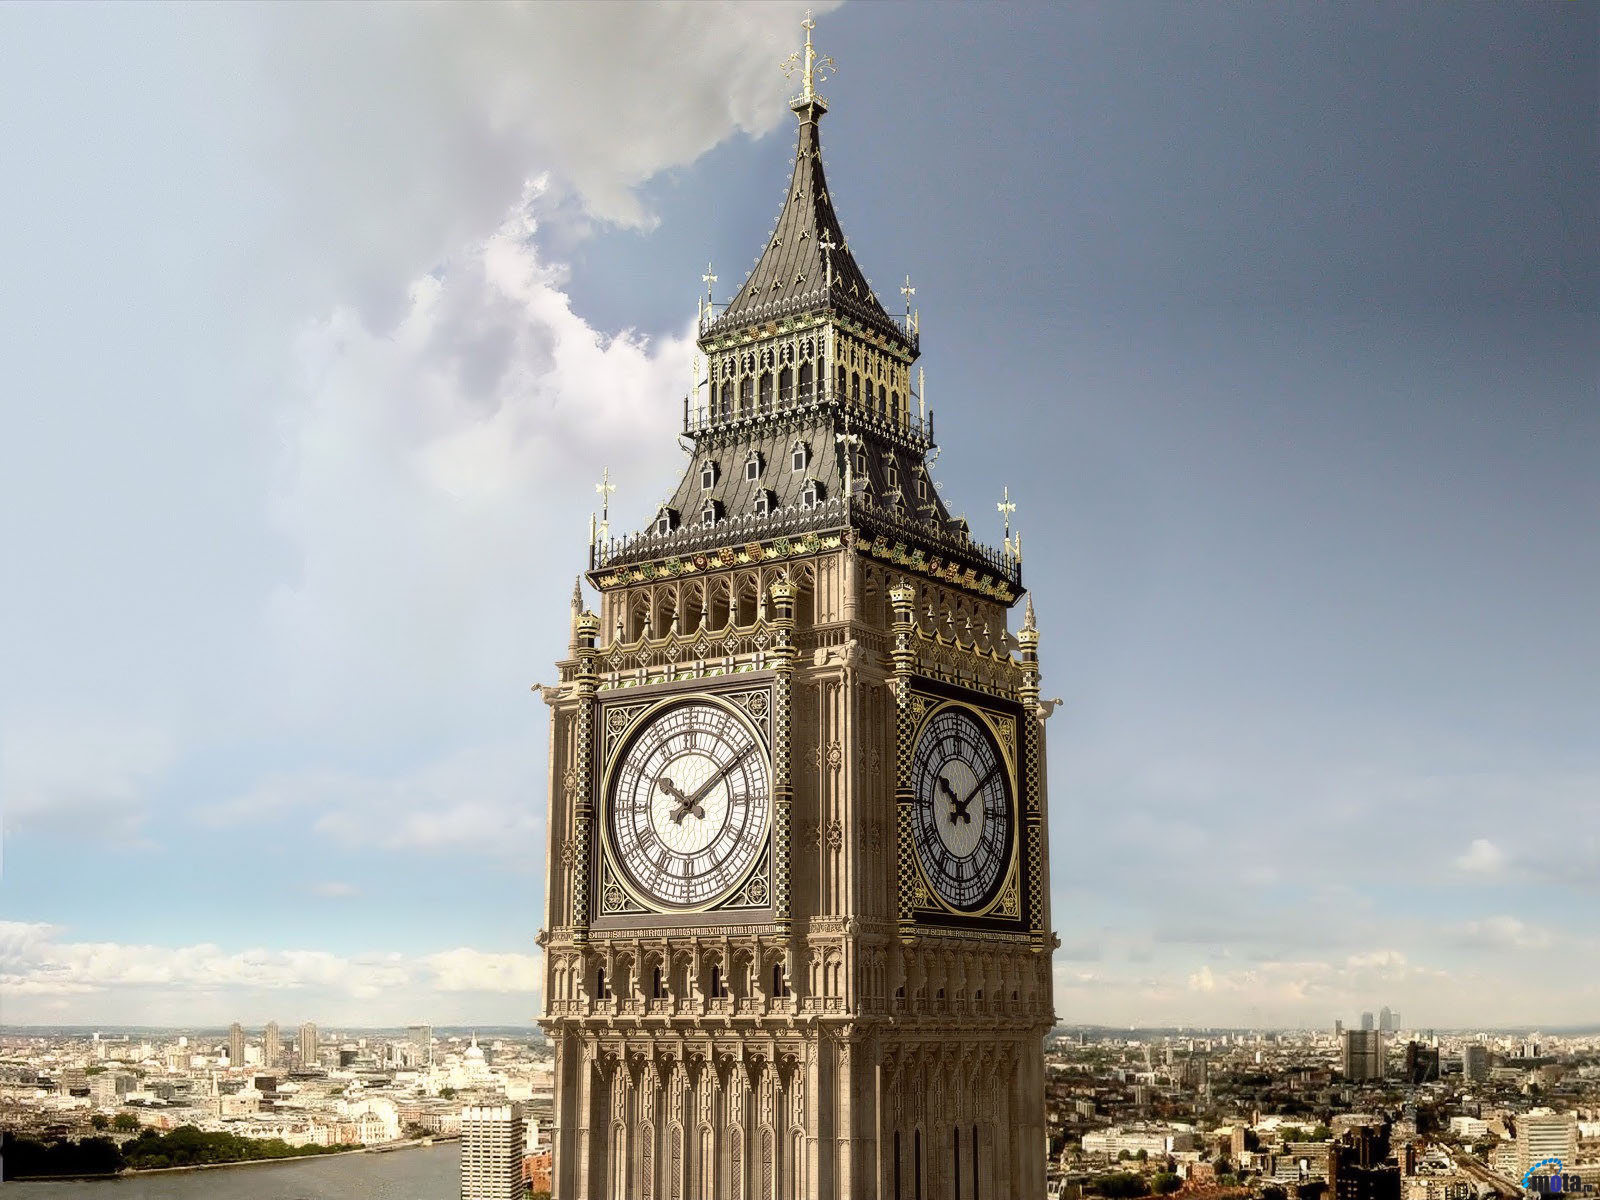 3D Фотообои «Лондон Биг-Бен»